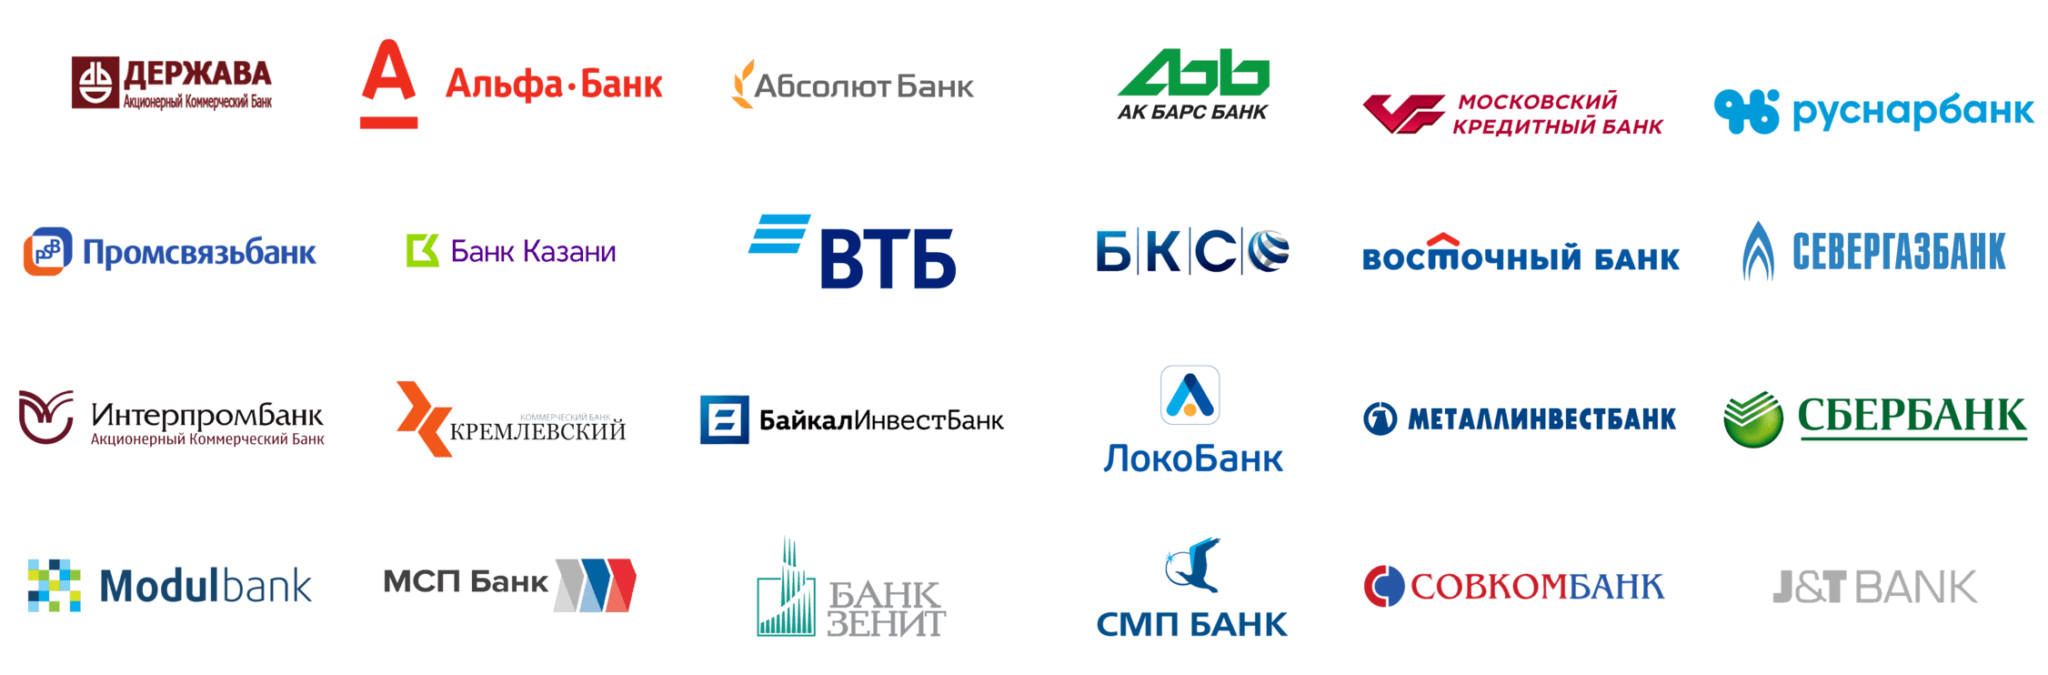 Банки партнеры втб для внесения наличных. Банки партнеры. Логотипы банков. Партнёры ВТБ банка. Банки партнеры список.